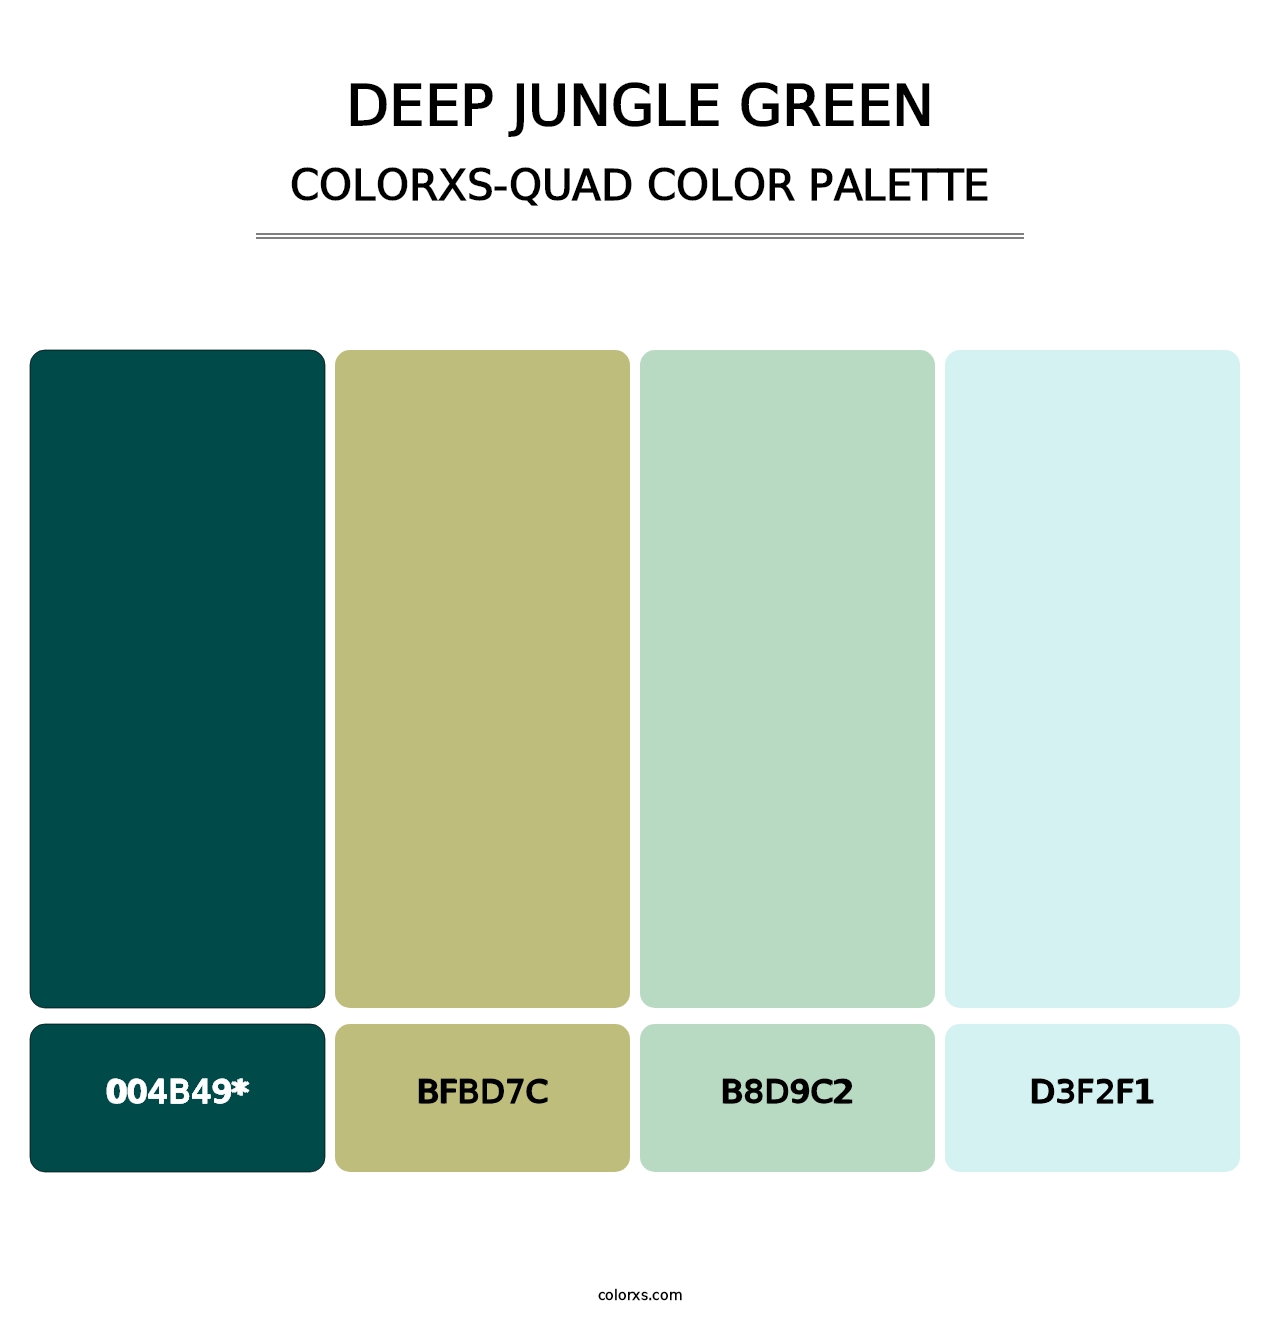 Deep Jungle Green - Colorxs Quad Palette